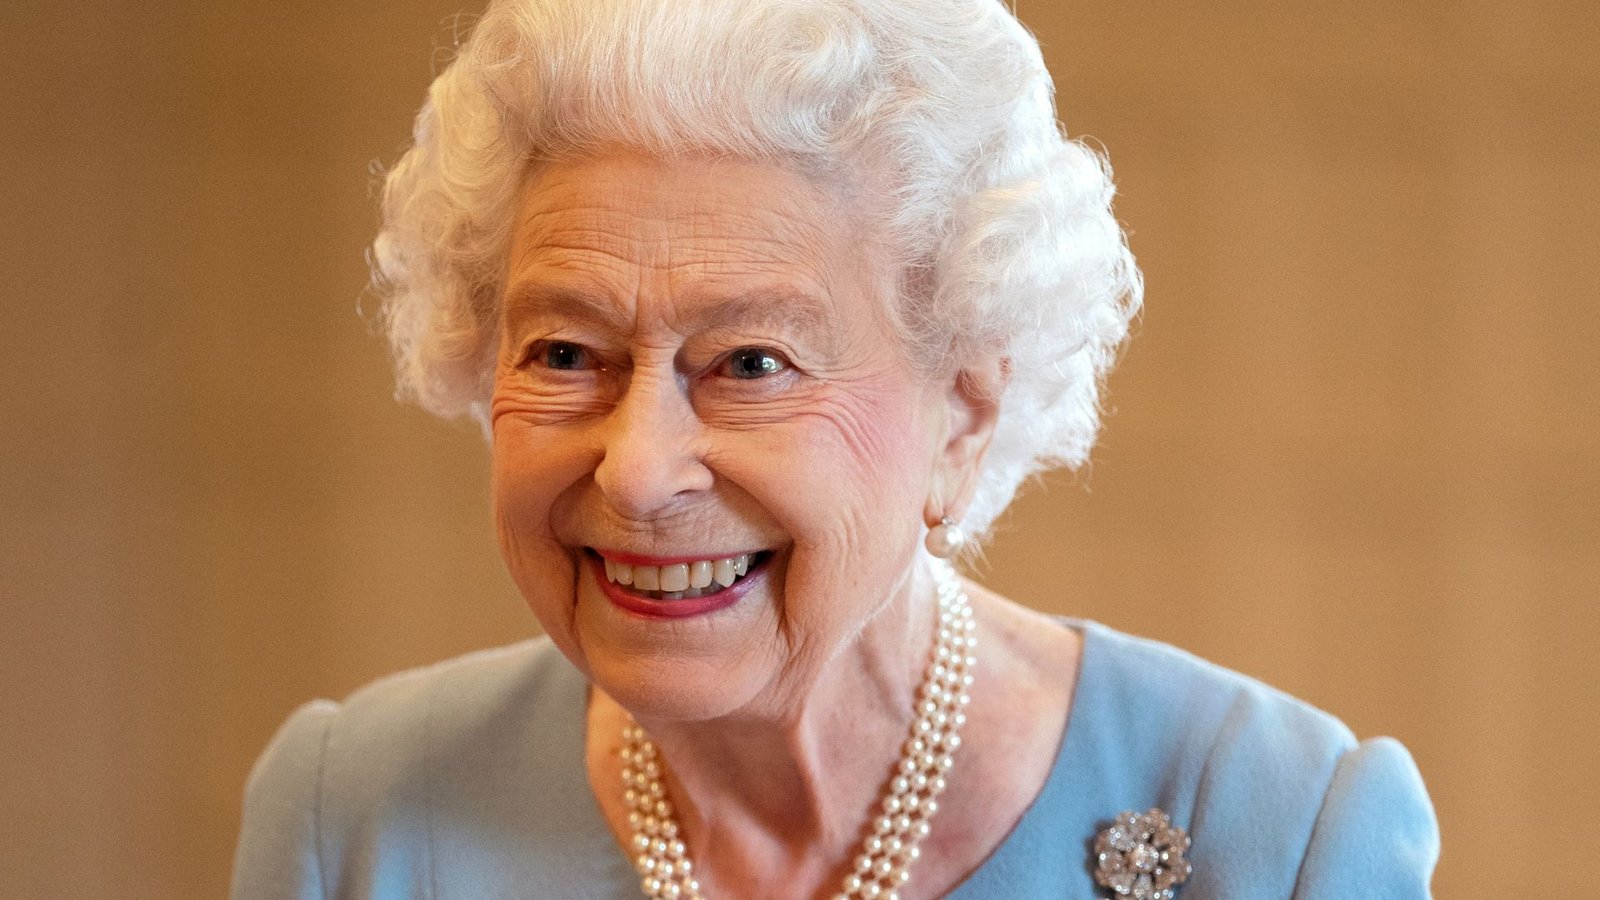 Königin Elizabeth II. geht ihren Pflichten nach - so gut es geht.Foto: Joe Giddens/PA Wire/dpa